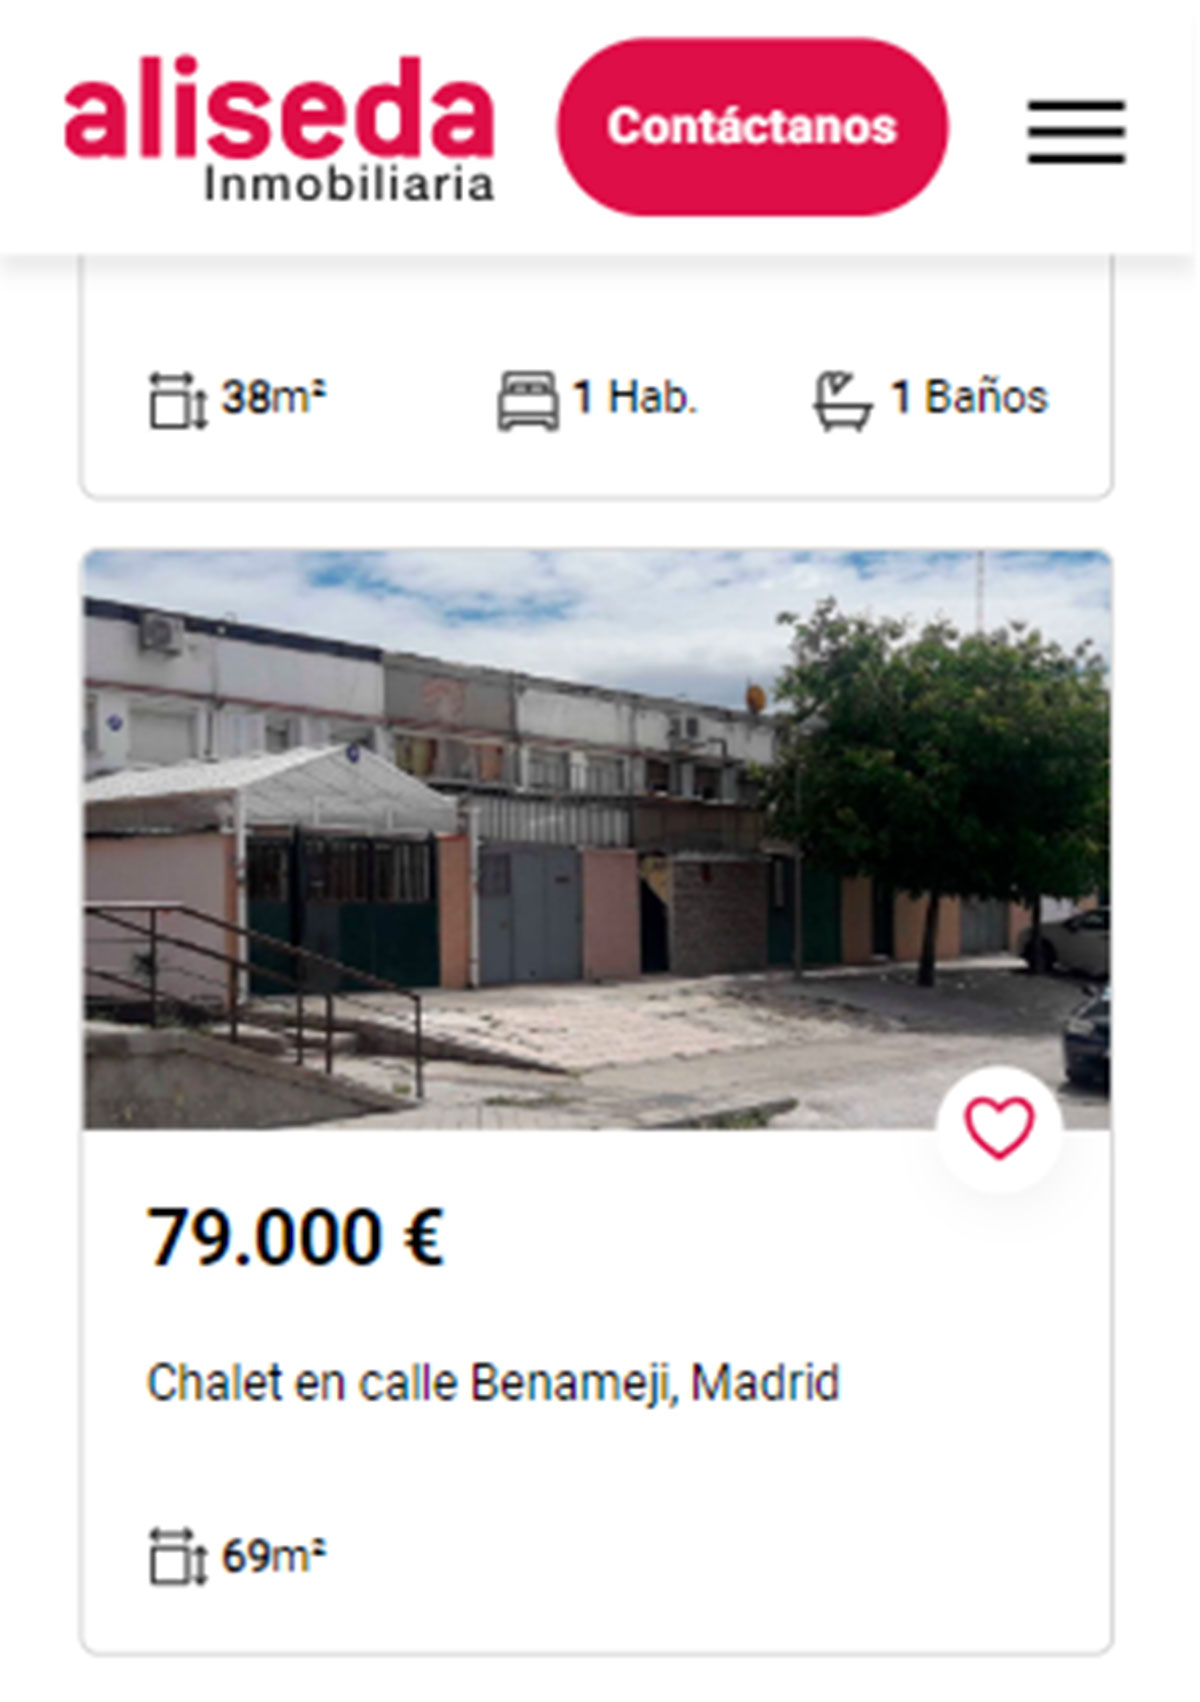 Piso en Madrid por 79.000